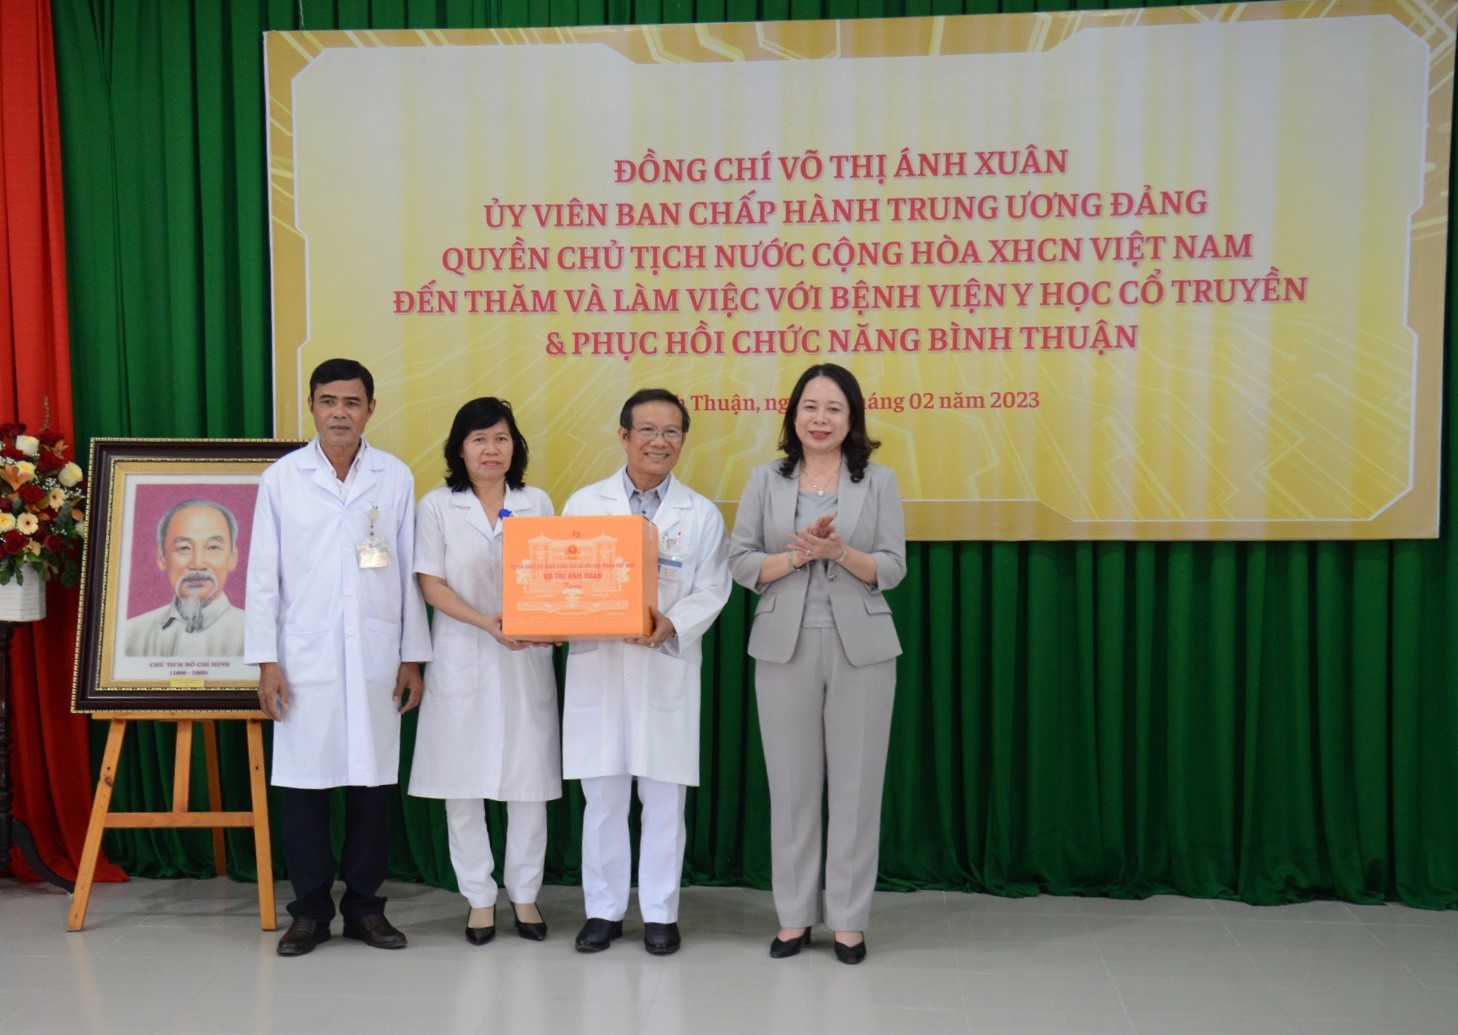 Quyền Chủ tịch nước thăm, tặng quà đội ngũ y, bác sĩ Bệnh viện Y học cổ truyền tỉnh Bình Thuận. Ảnh: Anh Linh